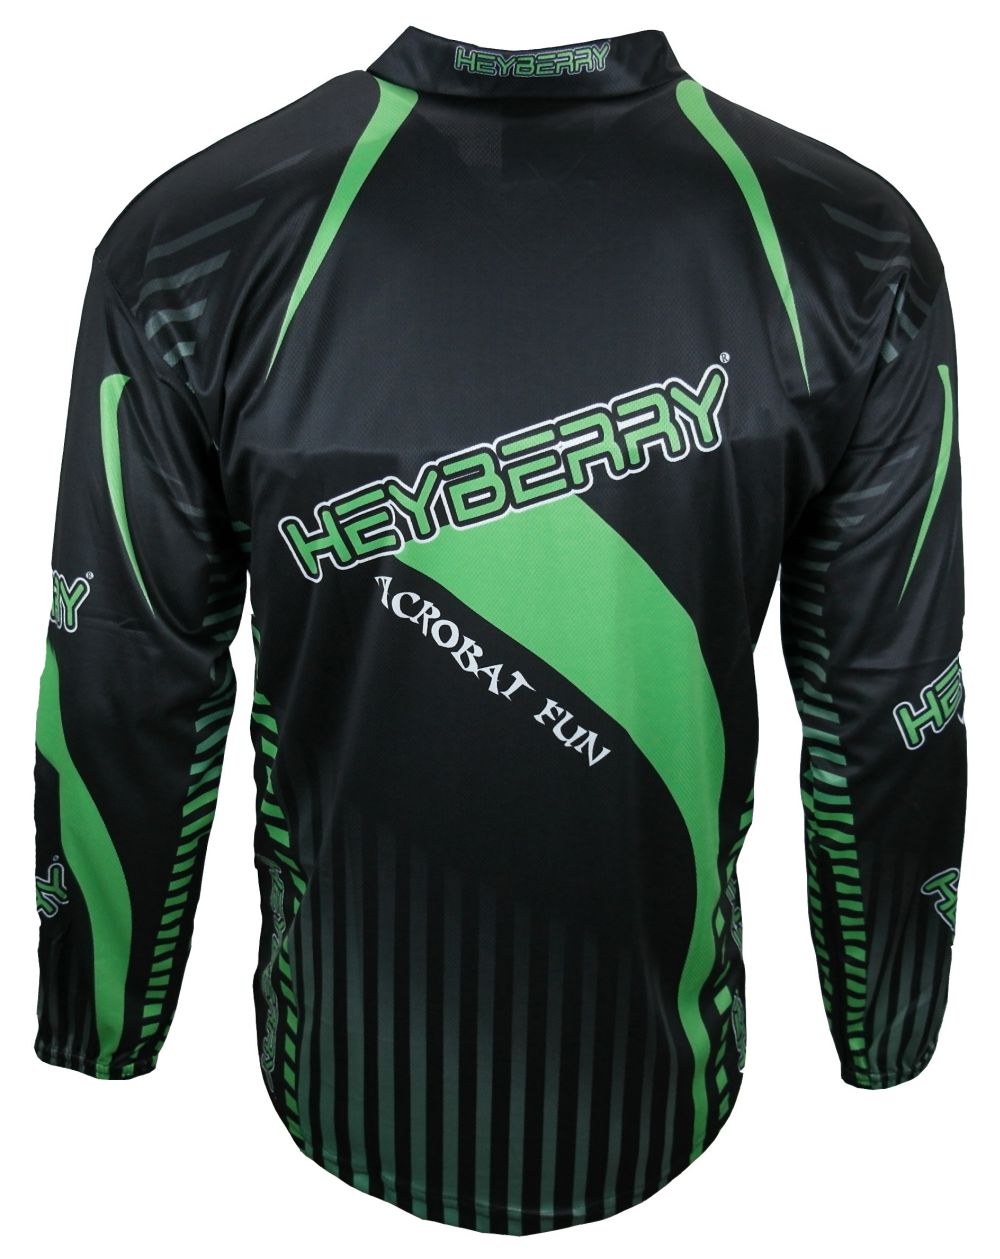 Heyberry Motocross MX Shirt Jersey Trikot schwarz fluorgrün Größe M L XL XXL